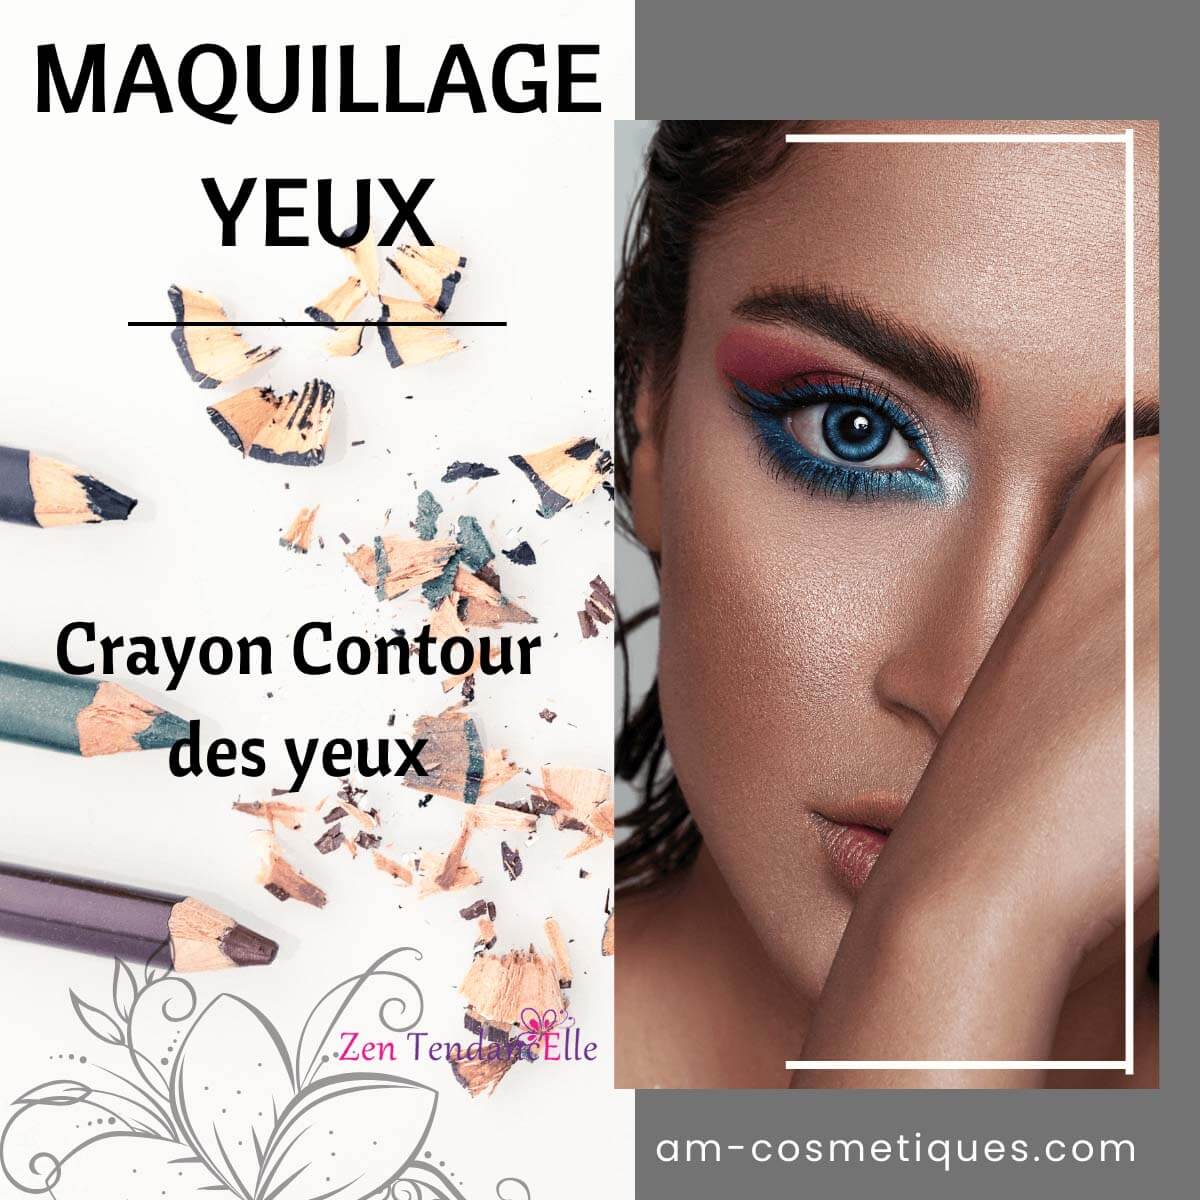 Crayon_contour_des_yeux_makeup_pas_cher_AM-Cosmetiques.jpg